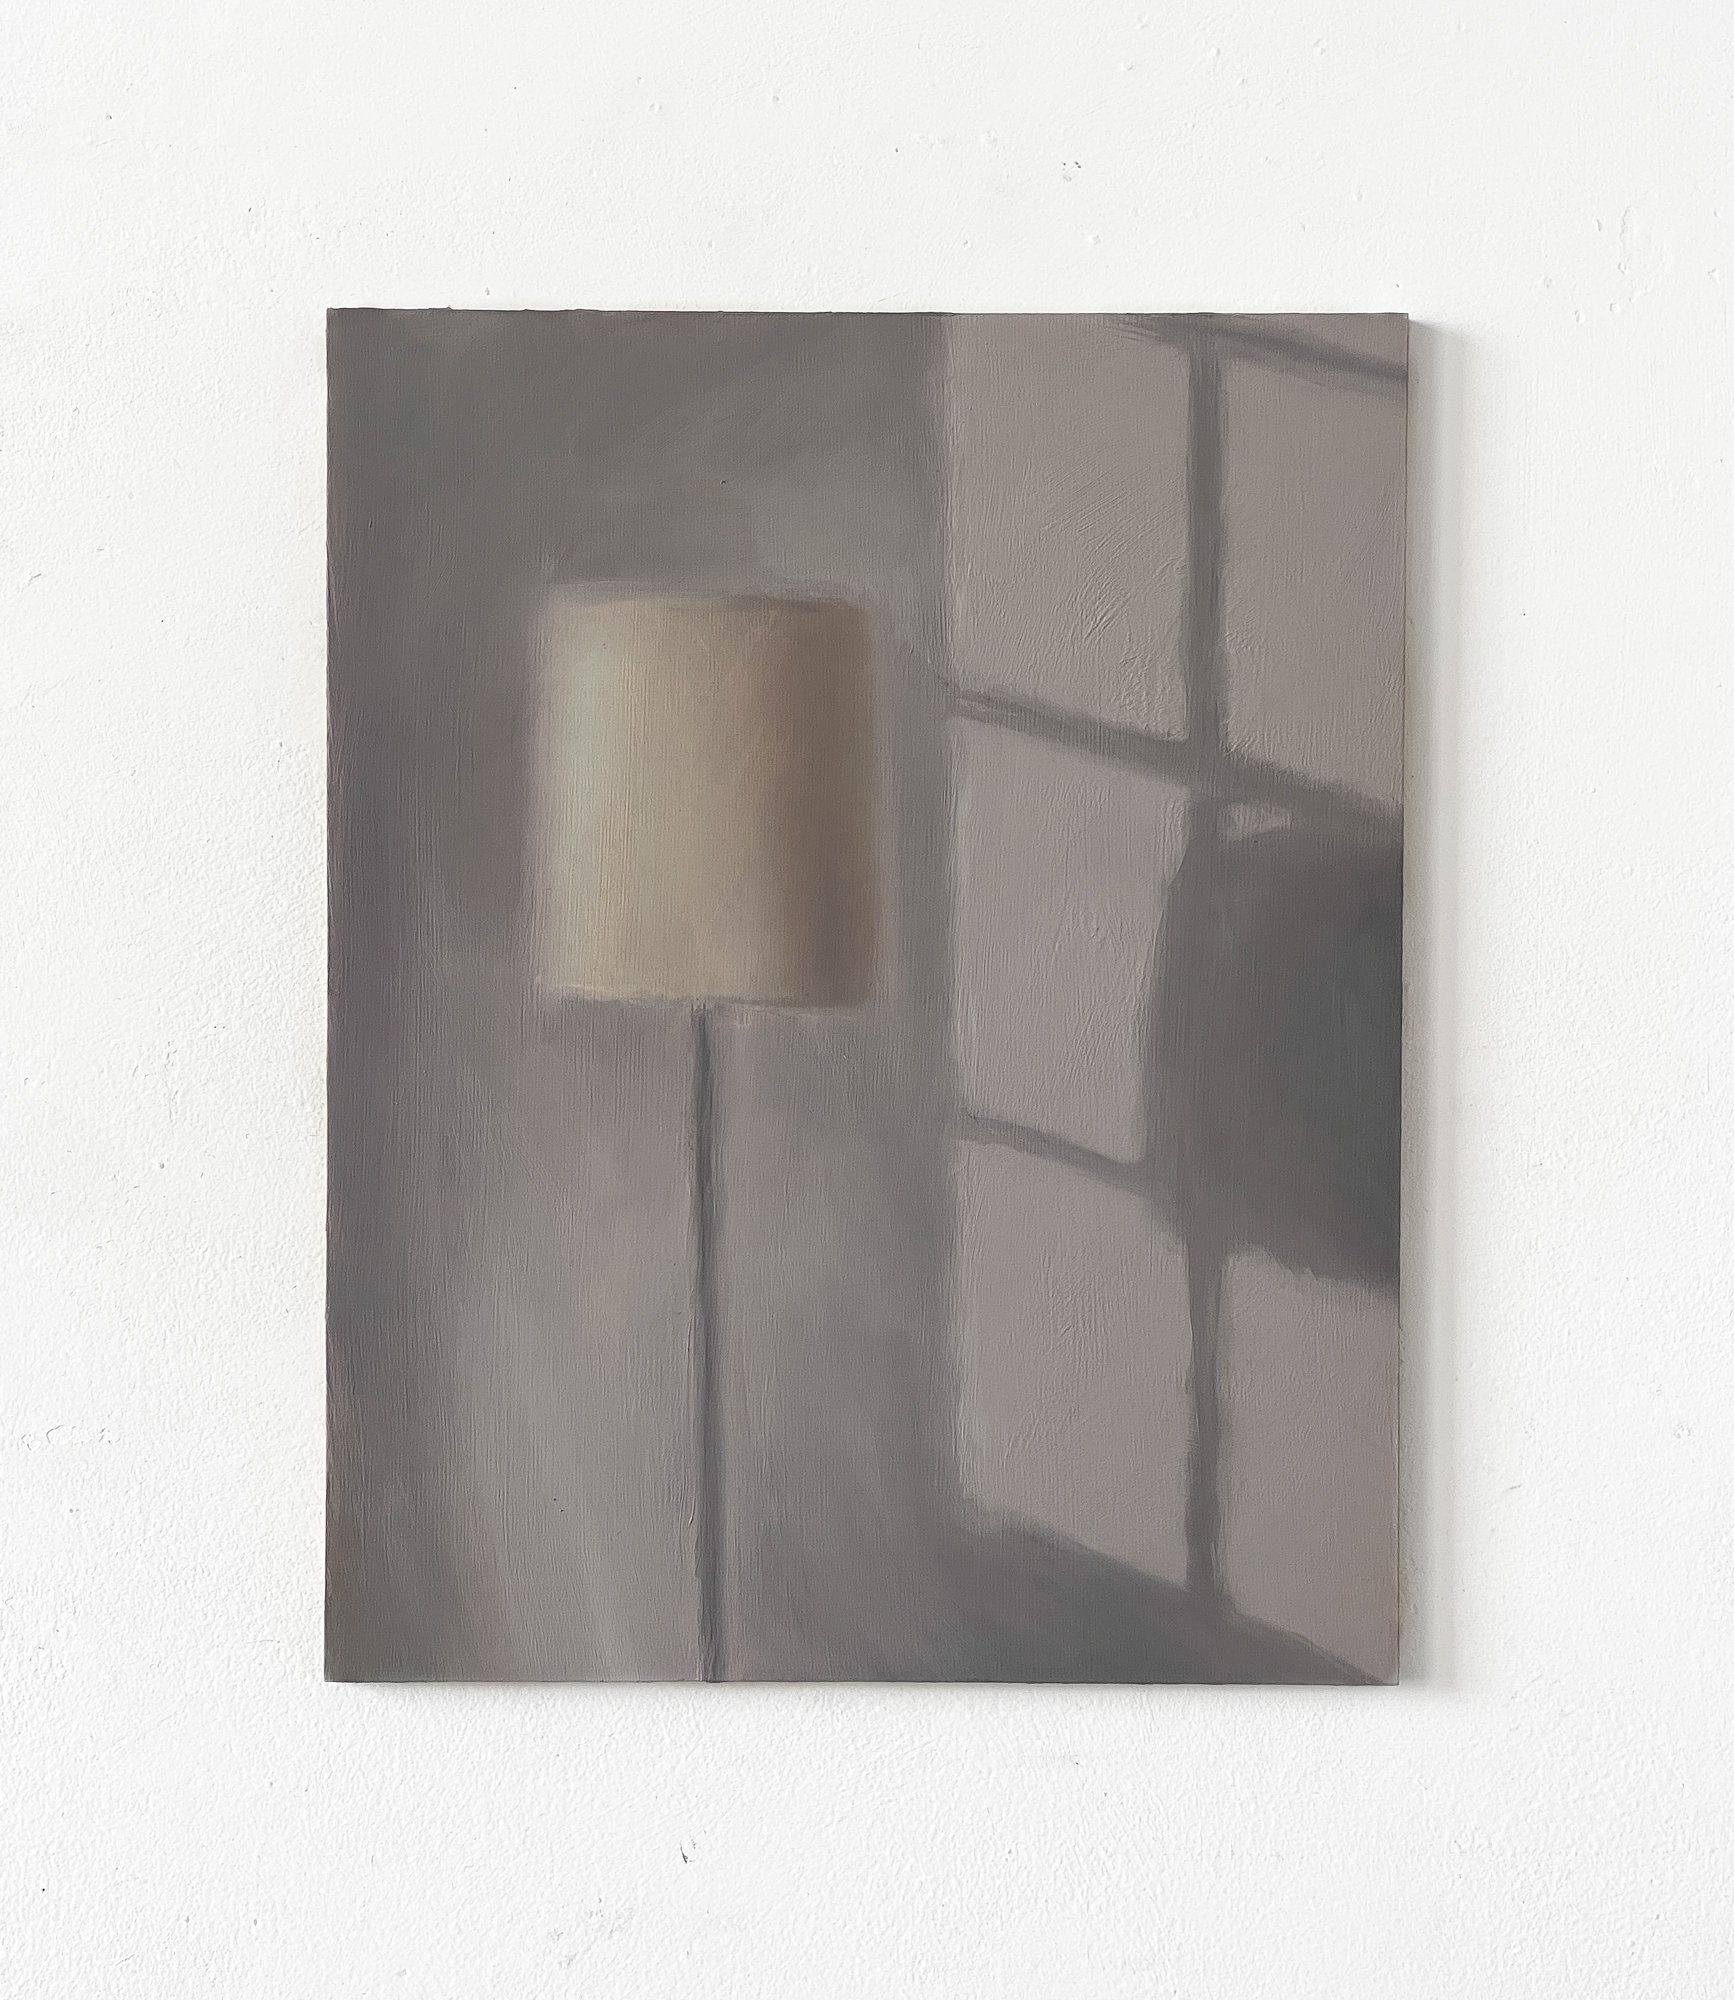  lamp shade (morning wall)  11 x 14 